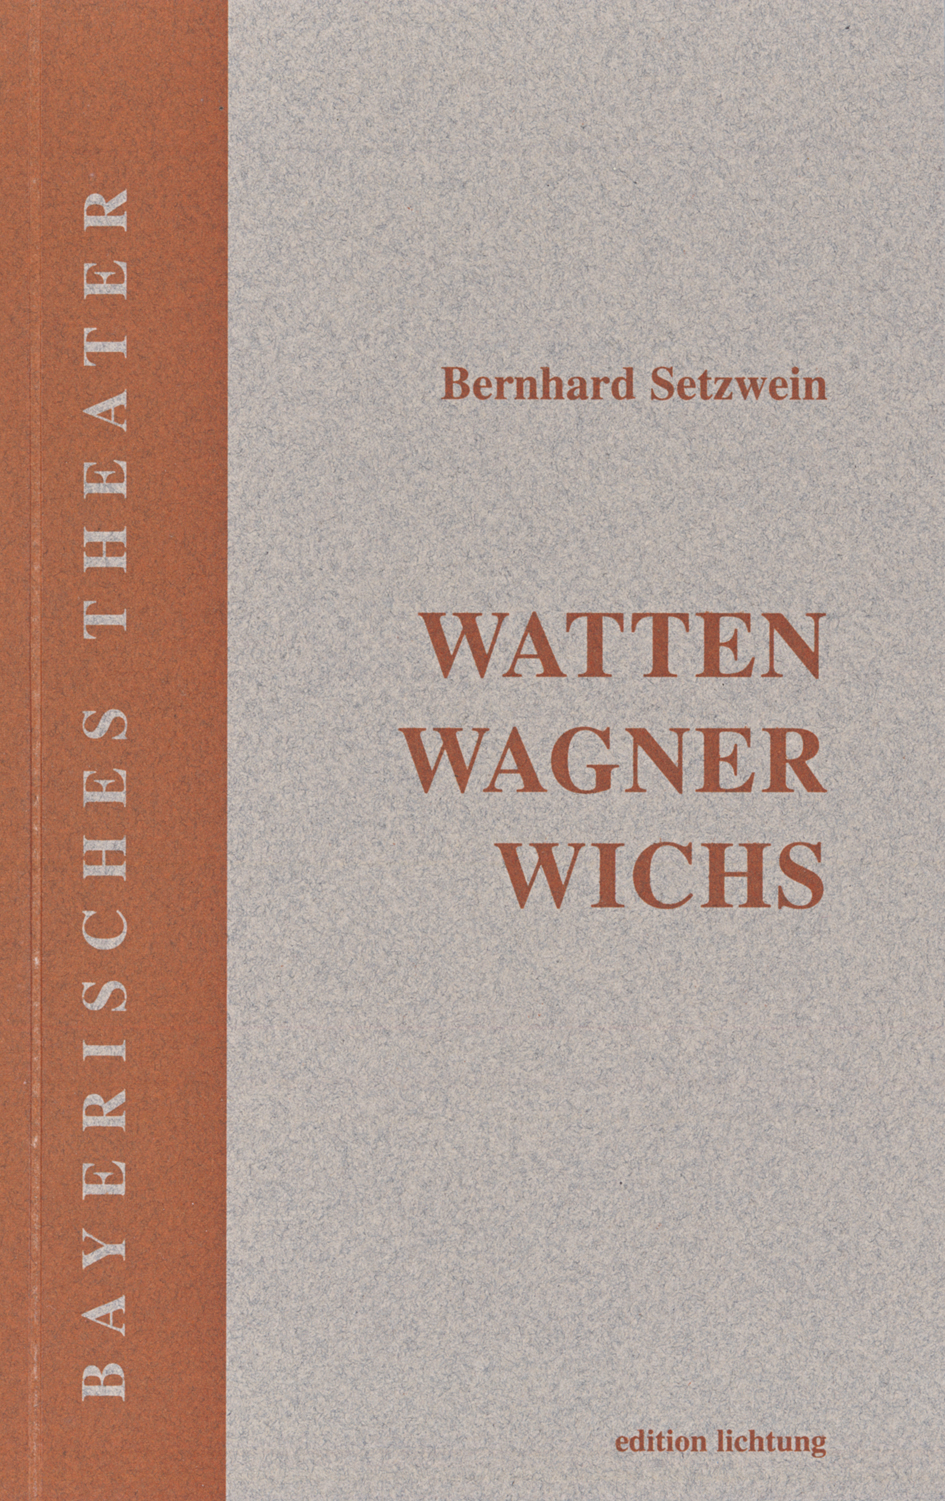 Watten Wagner Wichs